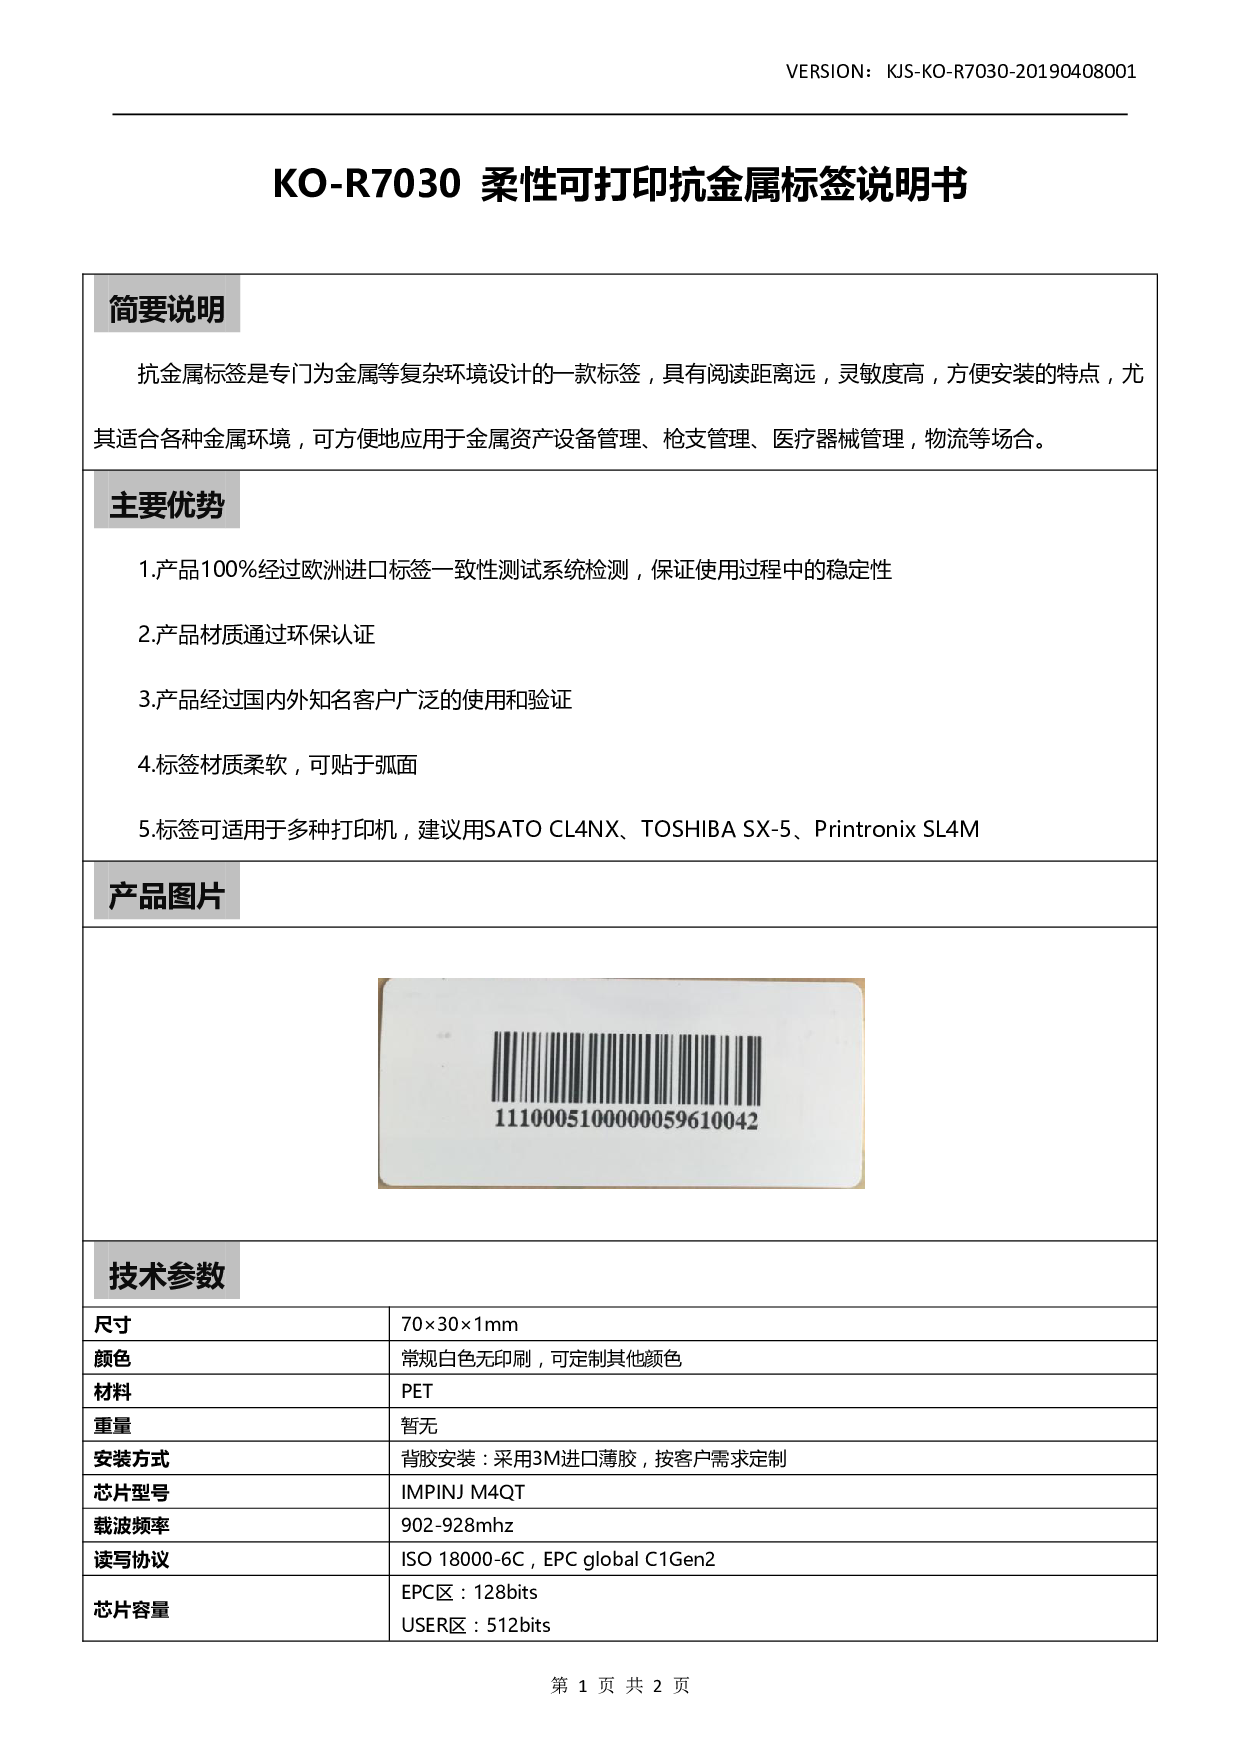 KO-R7030 柔性可打印抗金属标签图片